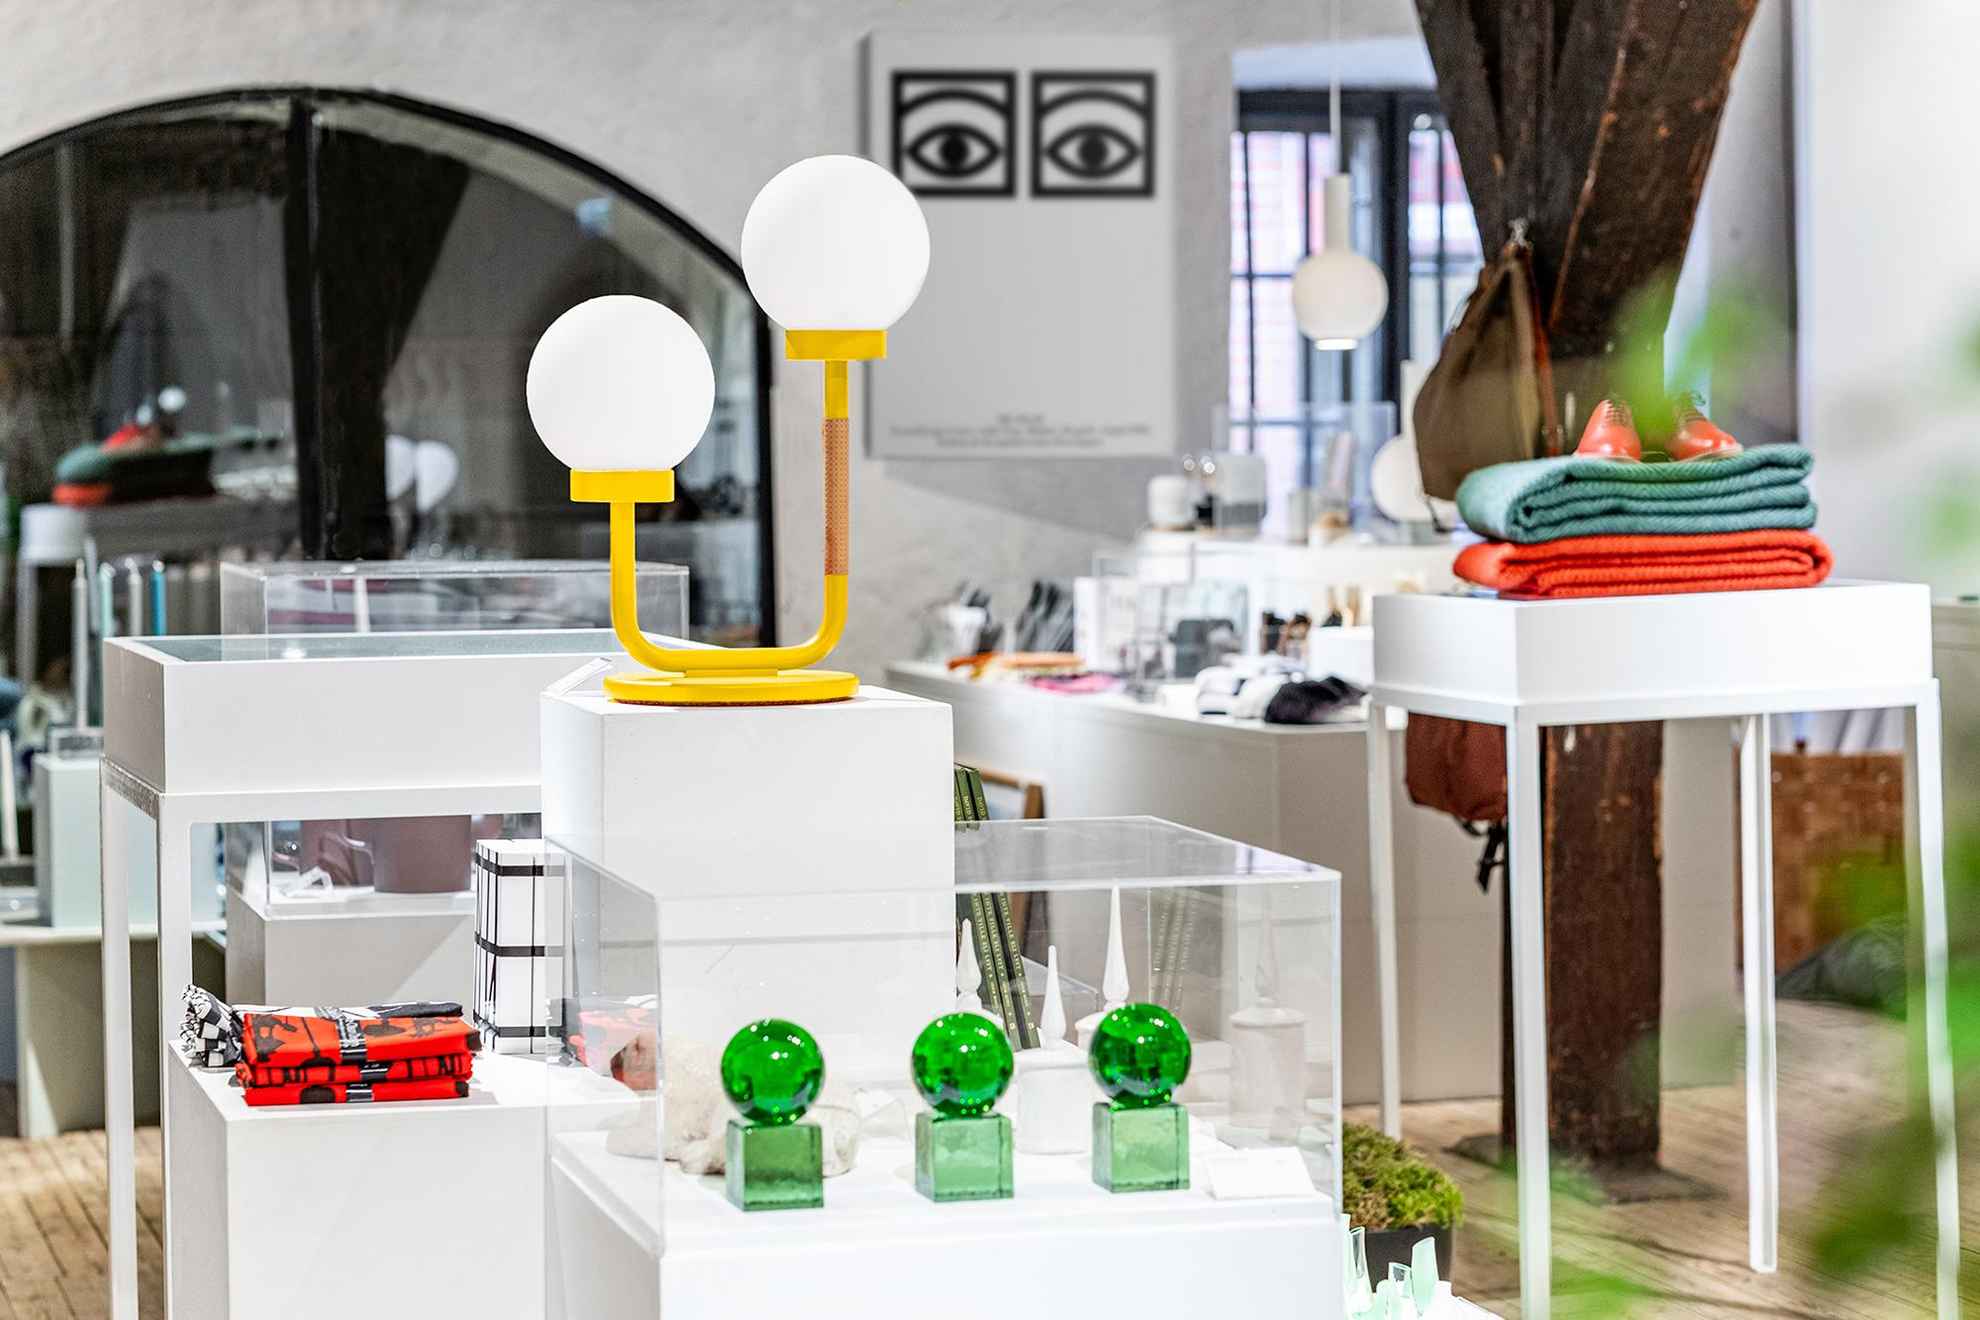 La boutique du centre Form/Design. De nombreux objets de design sont exposés, tels que des lampes, des objets d'art en verre et d'autres articles.